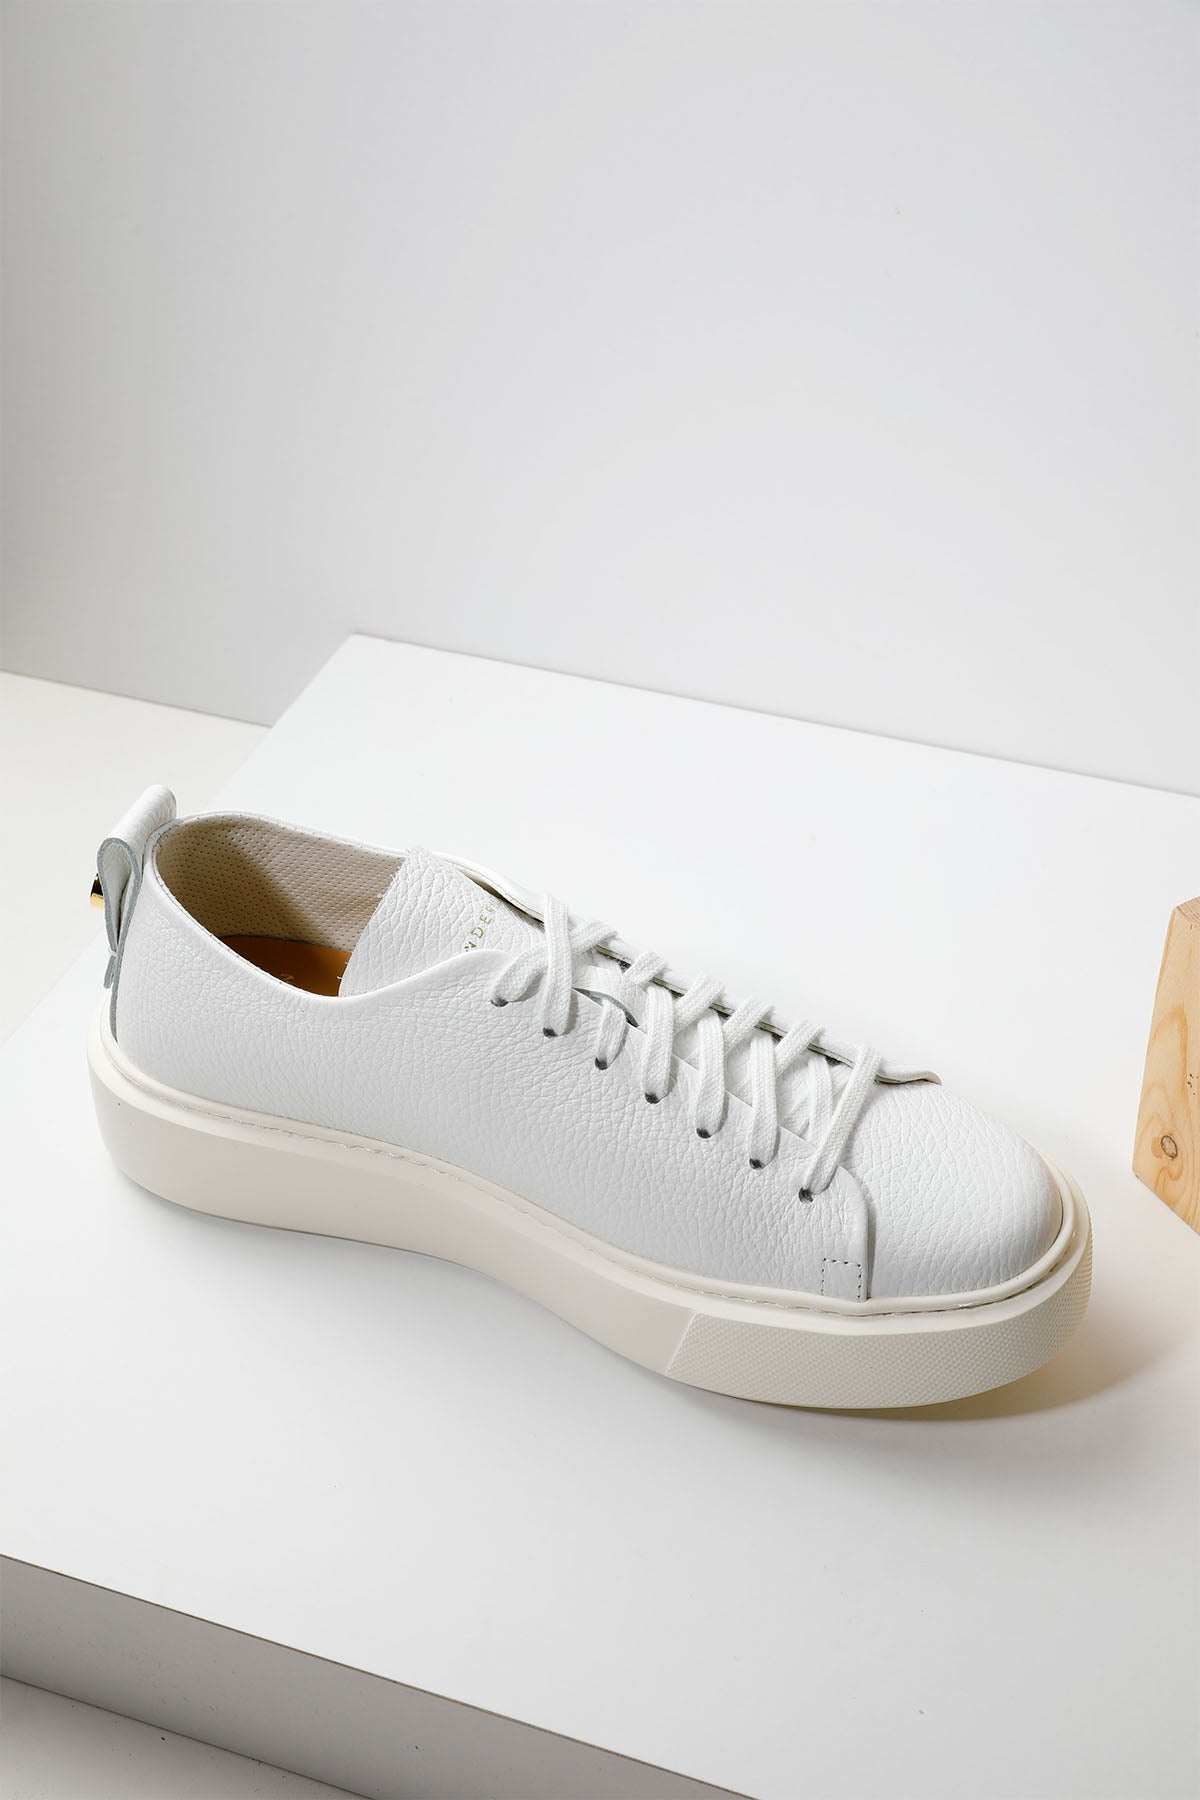 Henderson Talisa Çiçek Nakışlı Deri Sneaker Ayakkabı-Libas Trendy Fashion Store